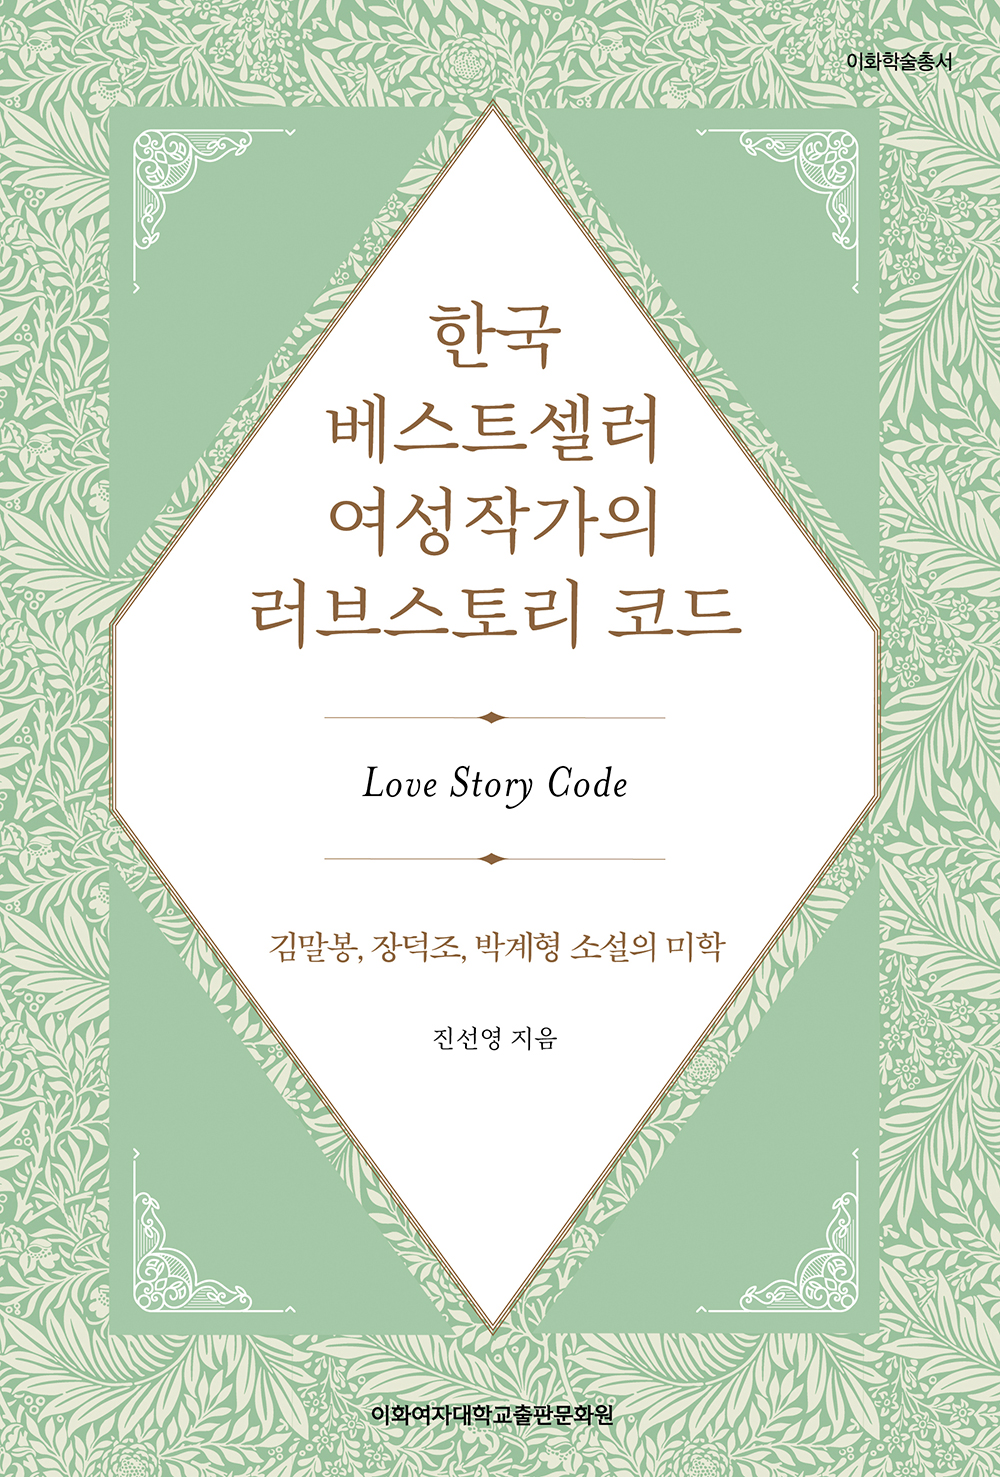 한국 베스트셀러 여성작가의 러브스토리 코드 도서이미지